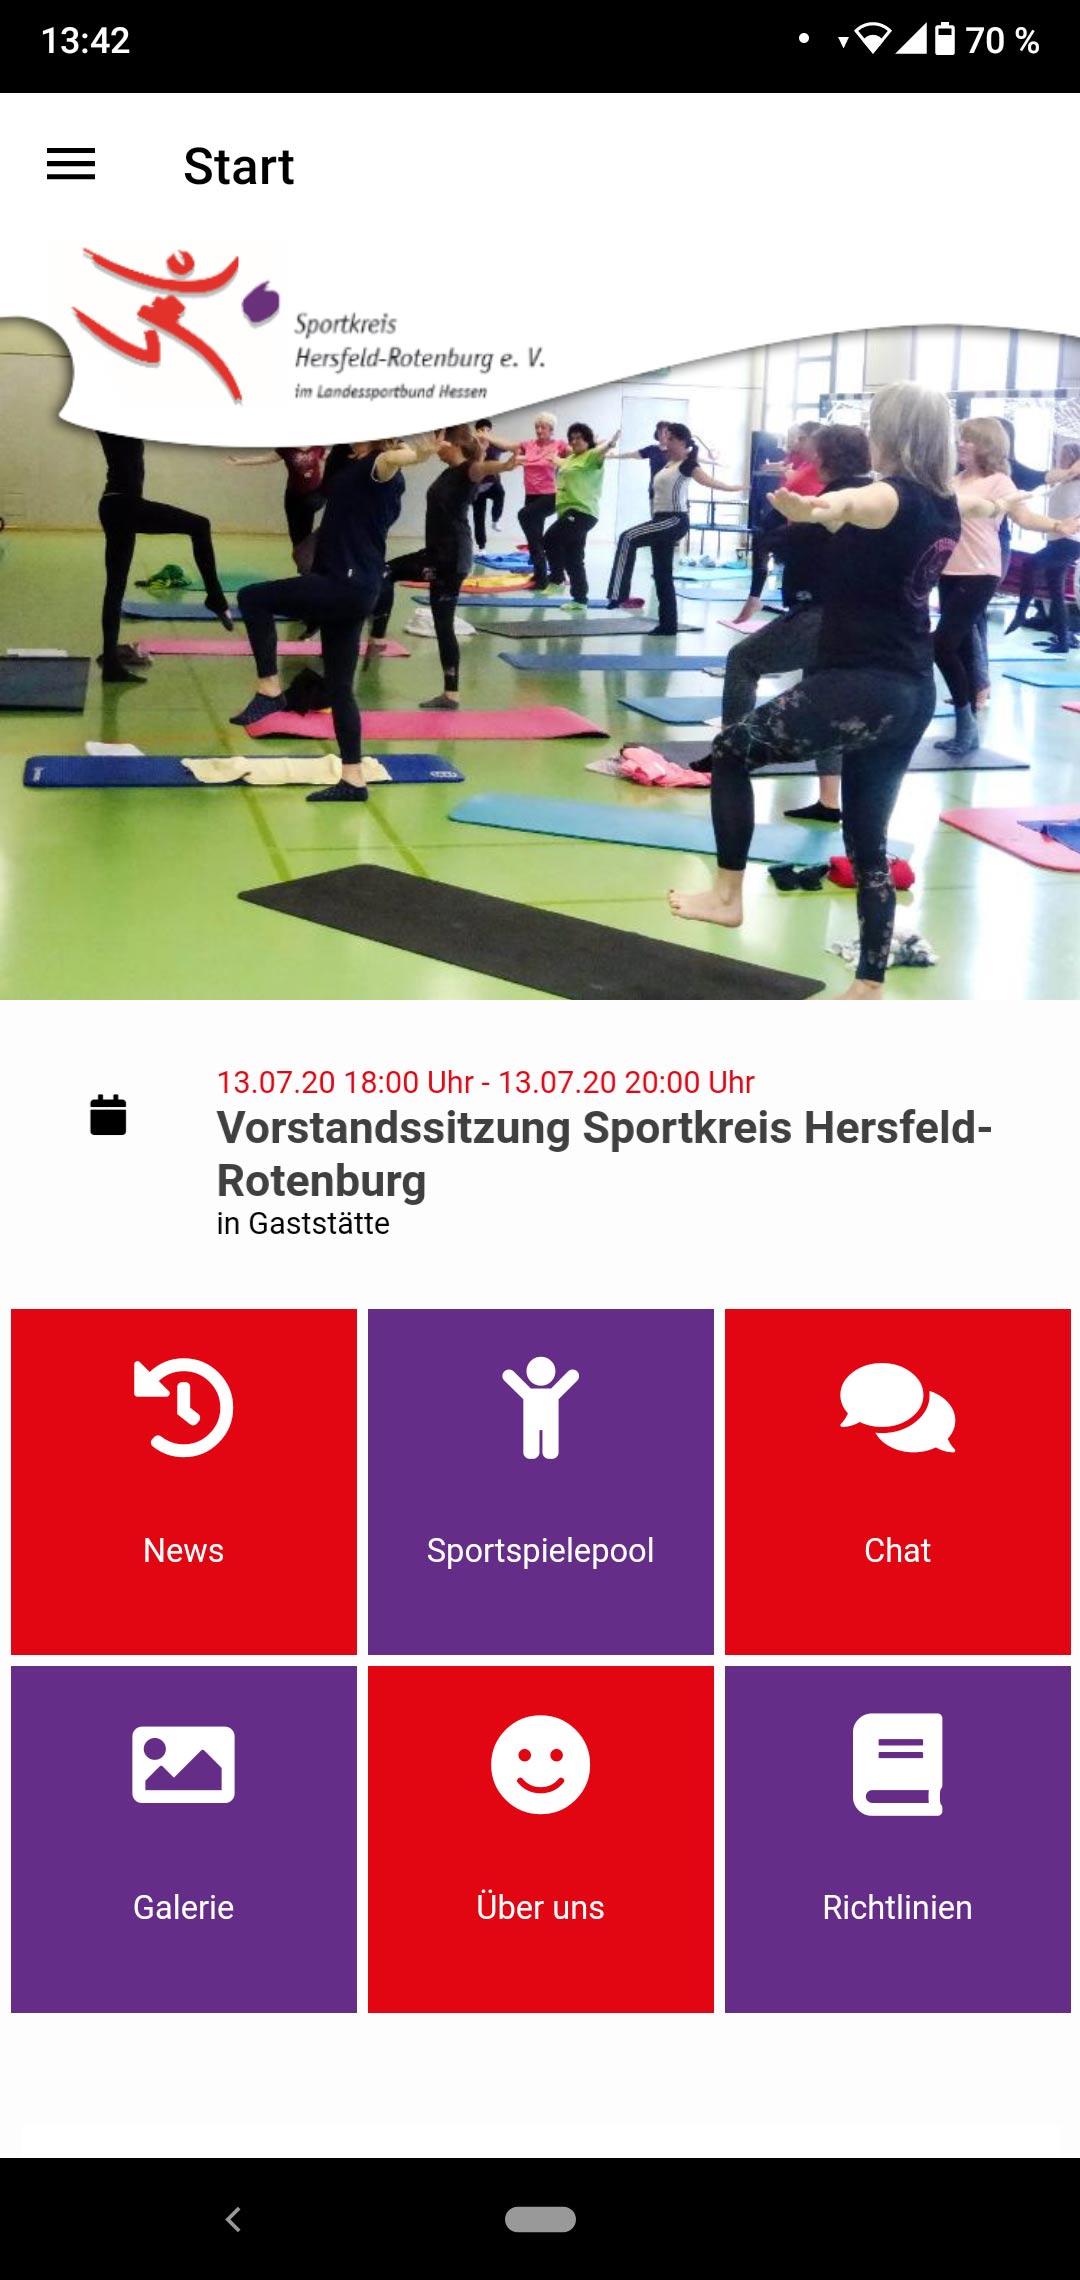 Aufbau von modernen Kommunikationsstrukturen im Sportkreis Hersfeld-Rotenburg